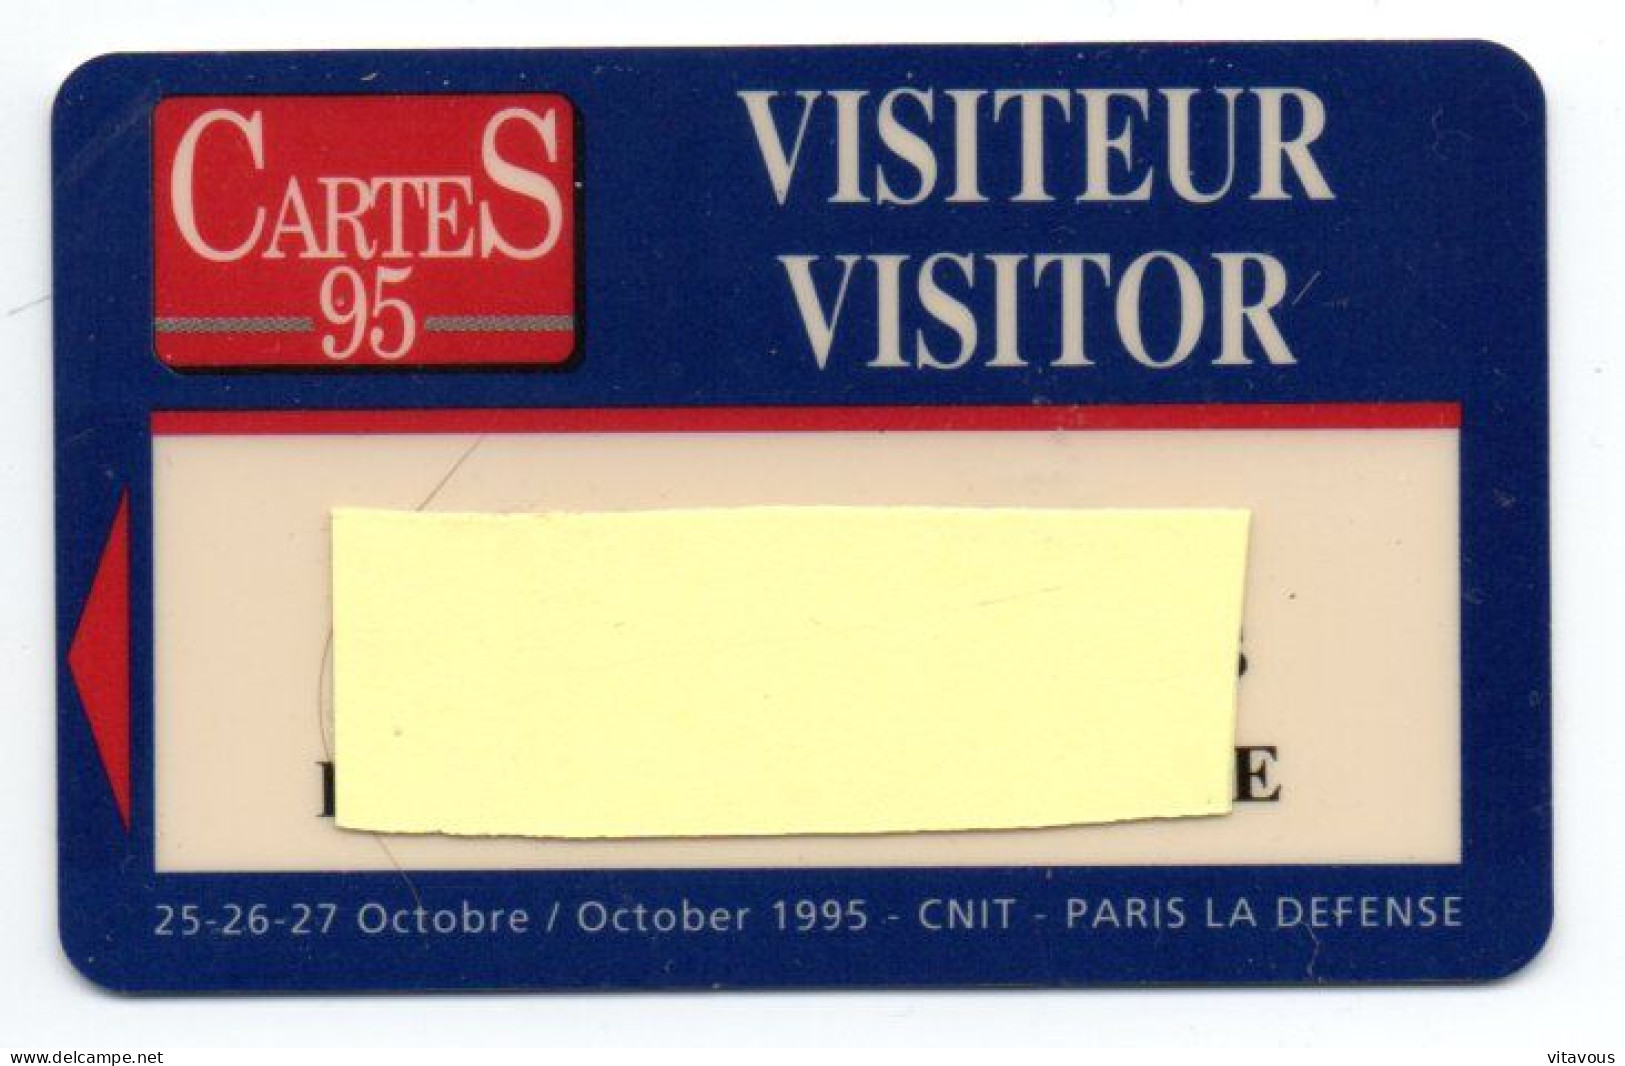 Carte Salon CarteS 95  France Paris Card  Magnétique Karte TBE (F 617) - Exhibition Cards